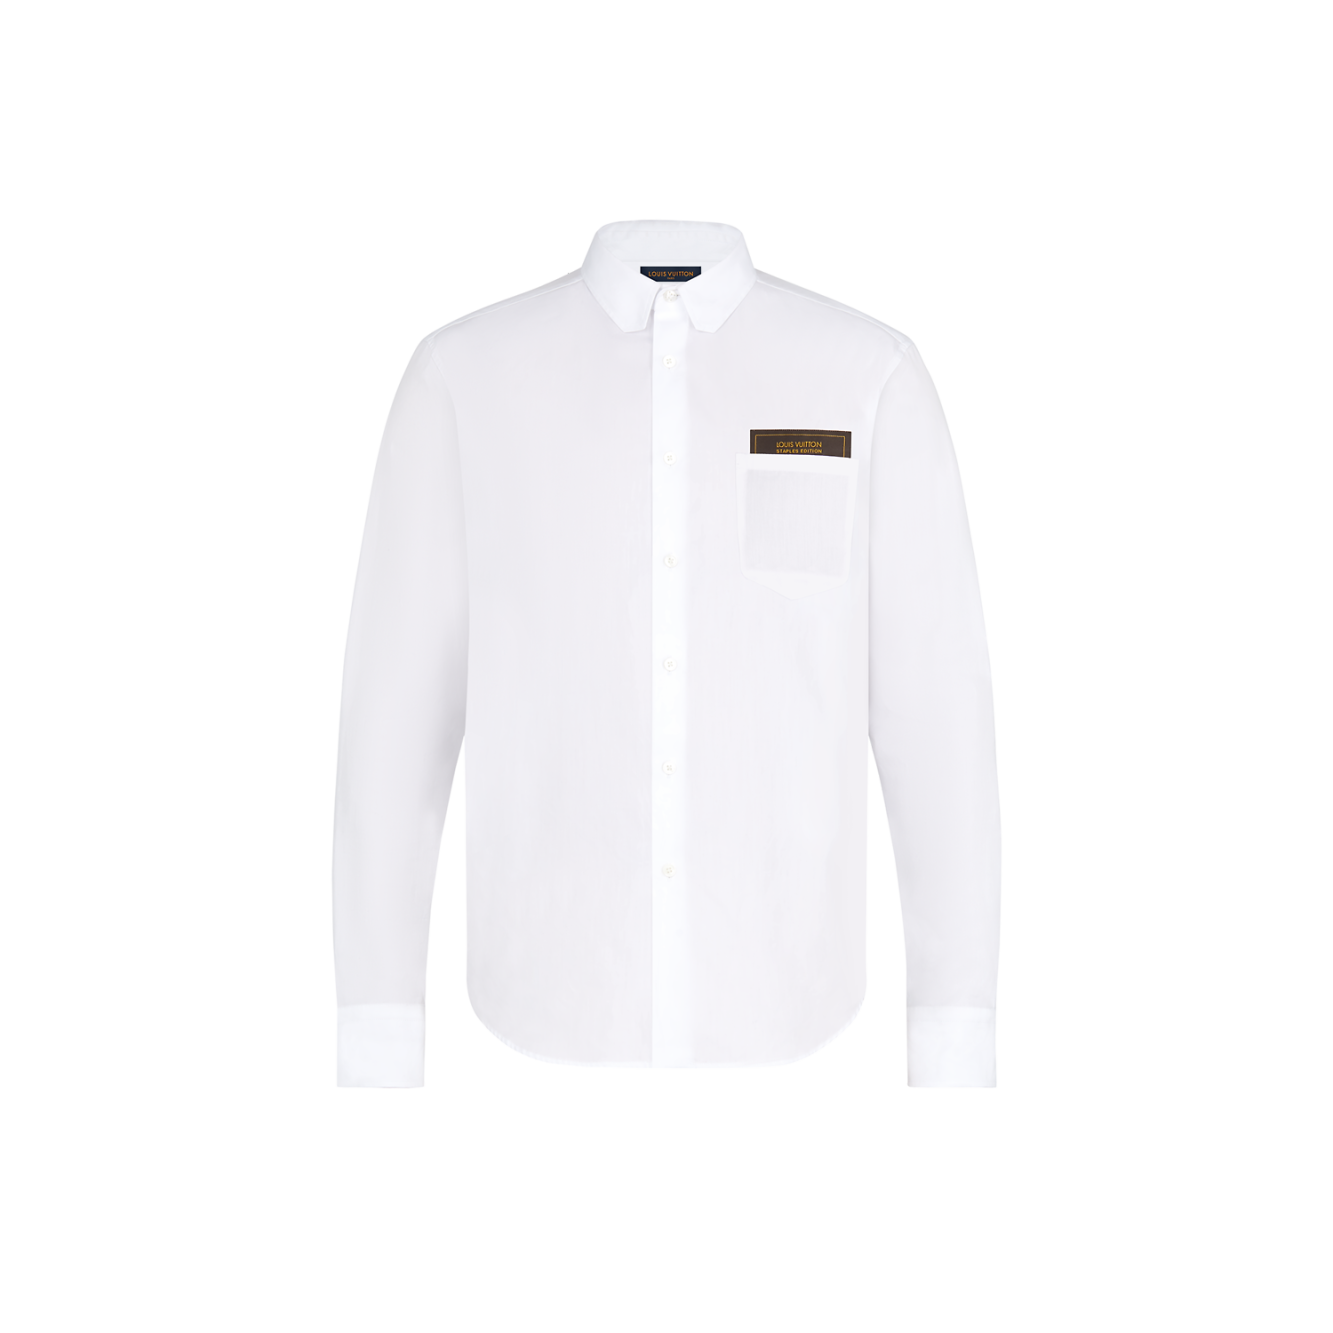 Louis Vuitton Regular DNA Poplin Shirt BLACK. Size 3L